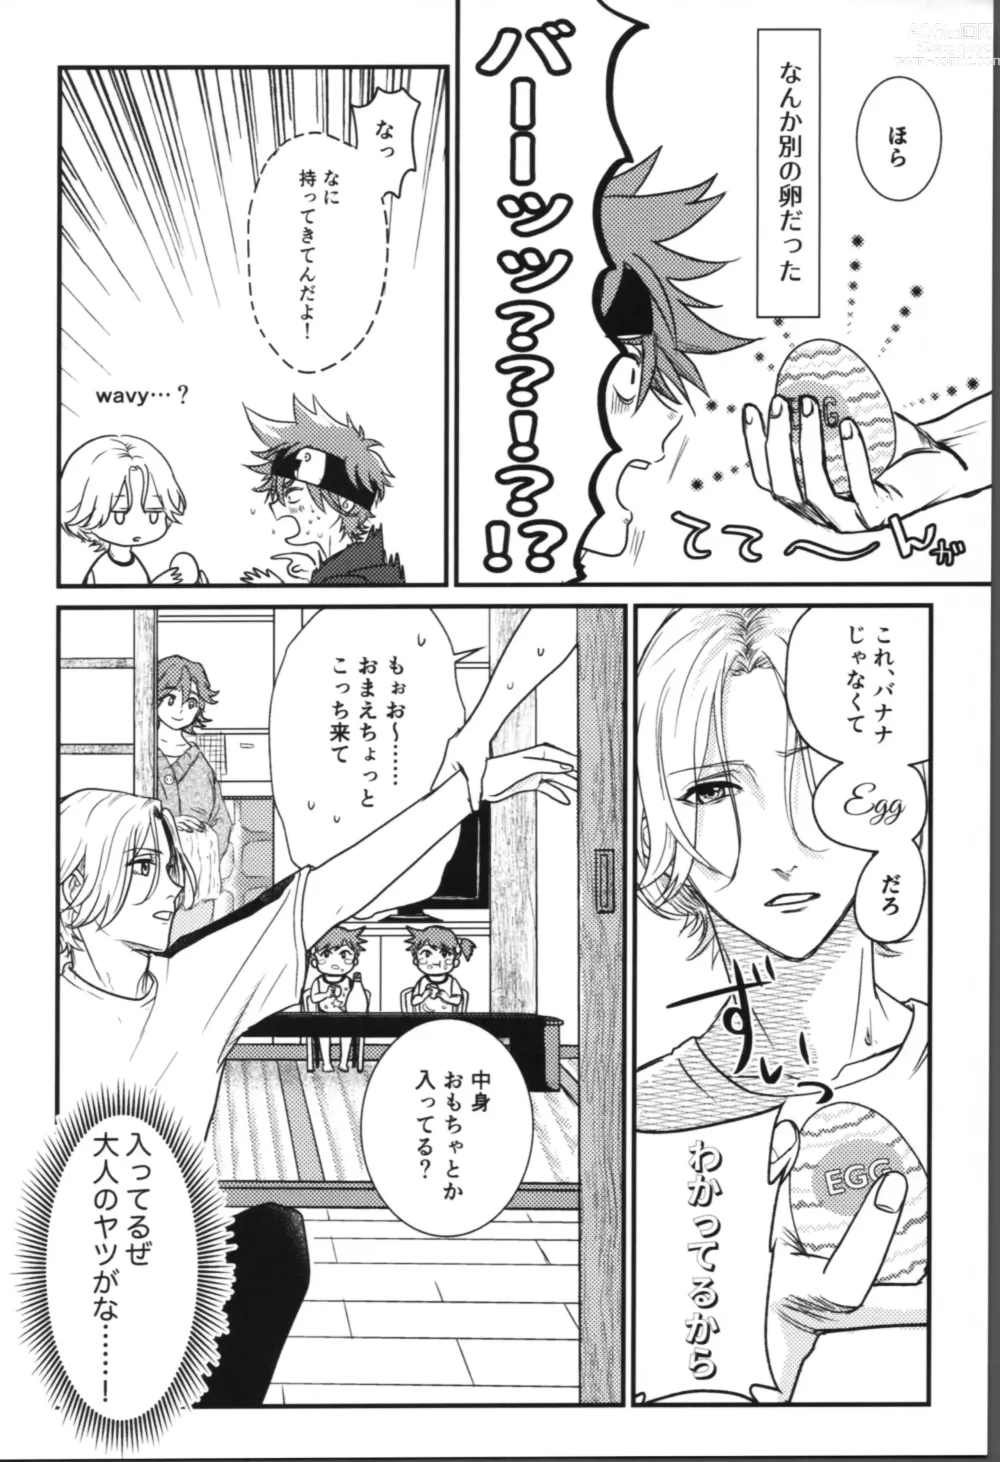 Page 6 of doujinshi Onaji ana no kijimuna